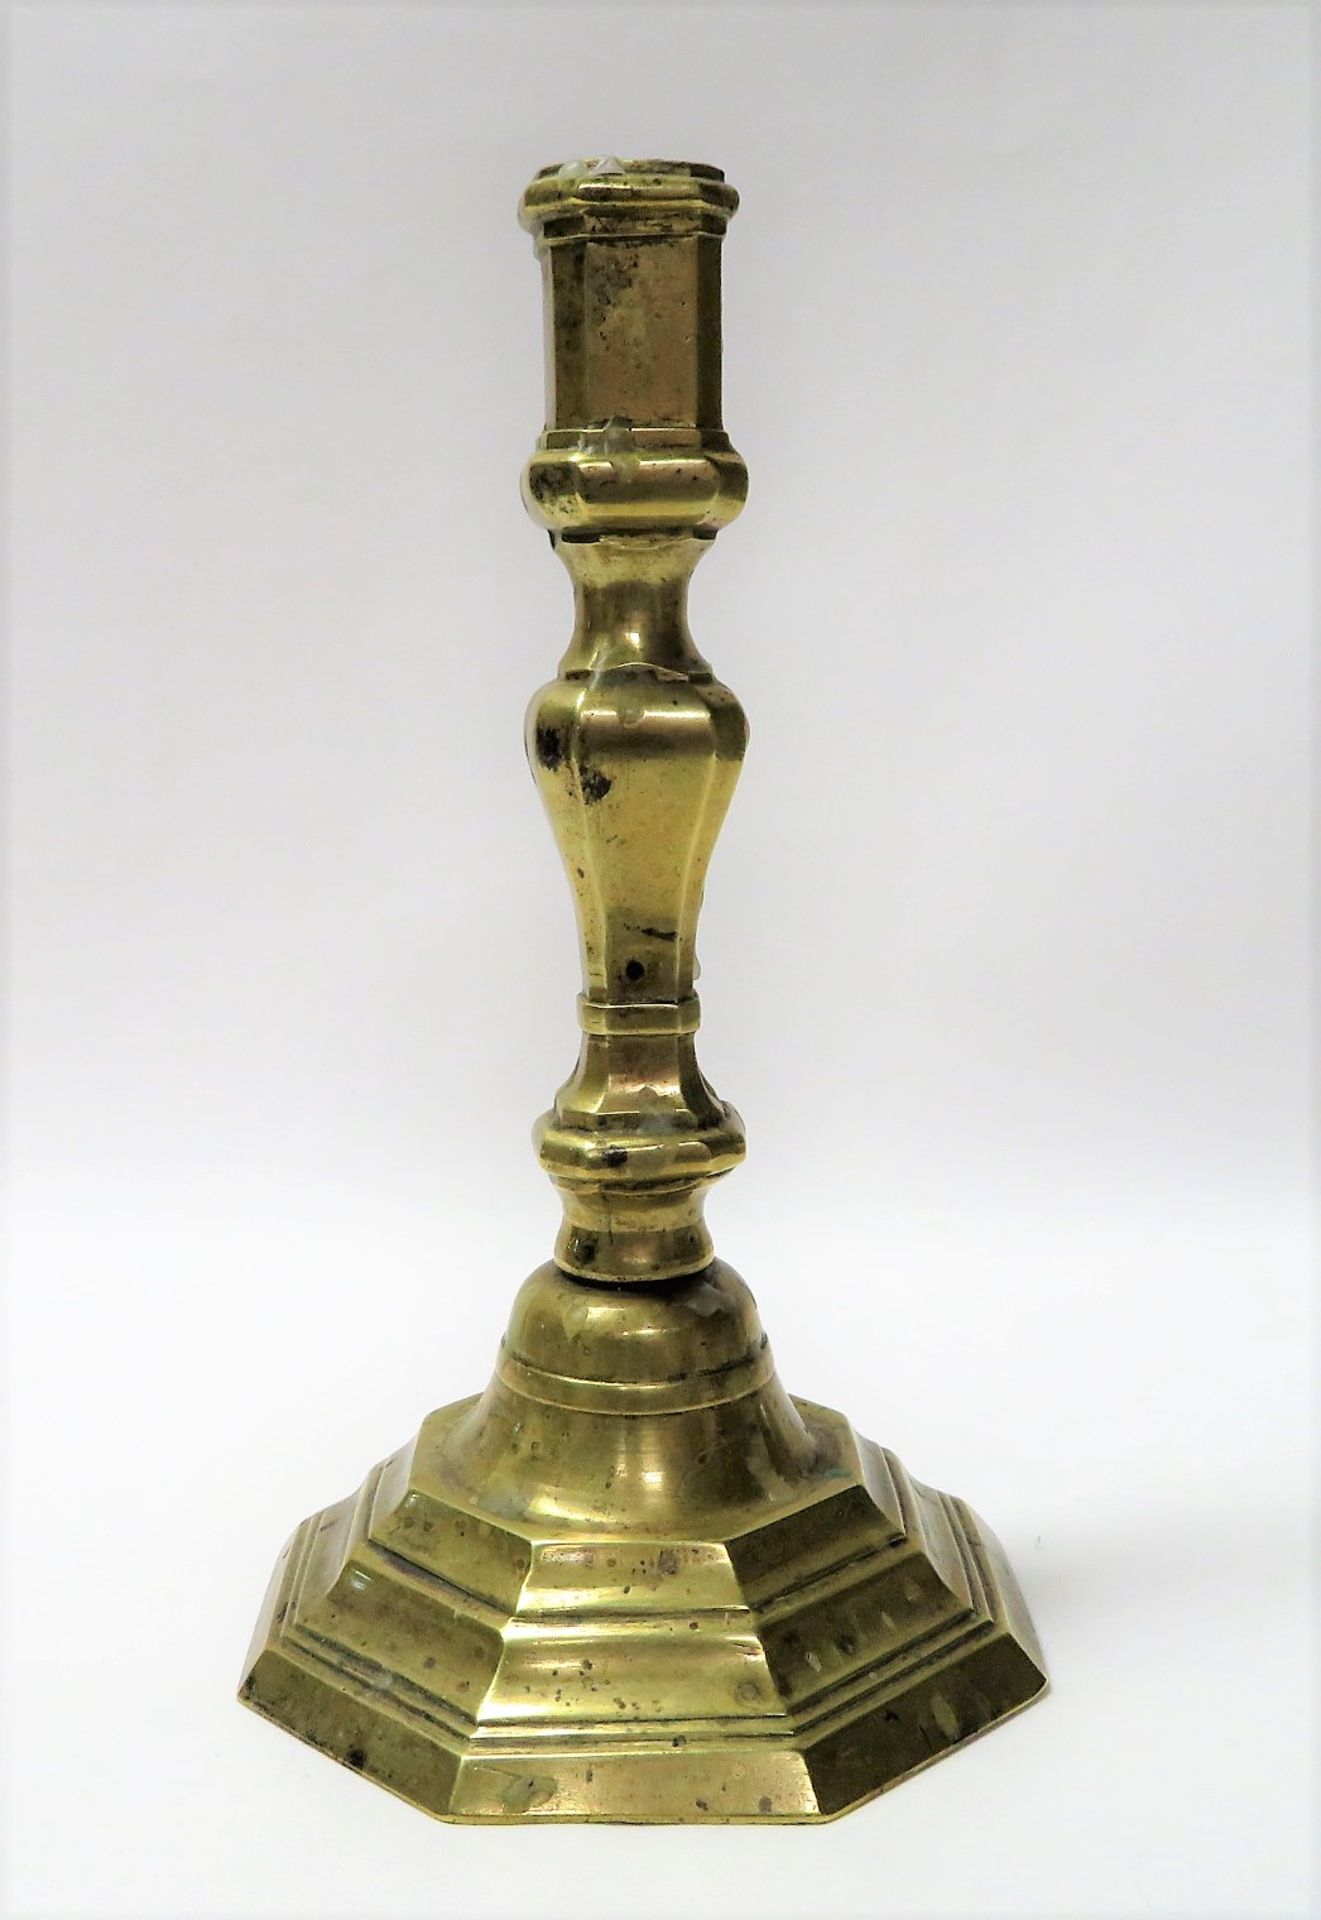 Kerzenleuchter, 17./18. Jahrhundert, Messing, Schaft lose, h 22 cm, d 12,5 cm.